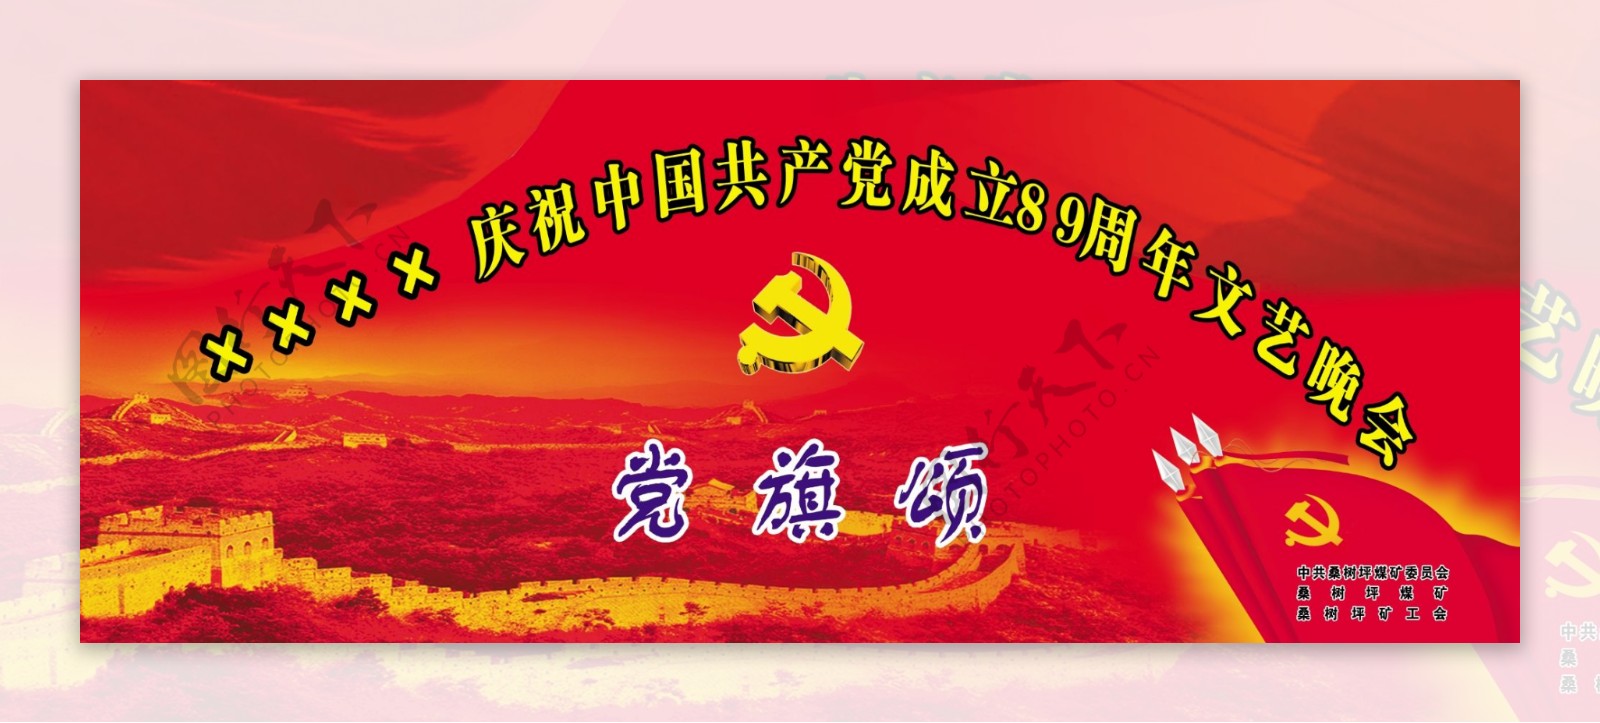 祝中国共产党建党八十九周年图片